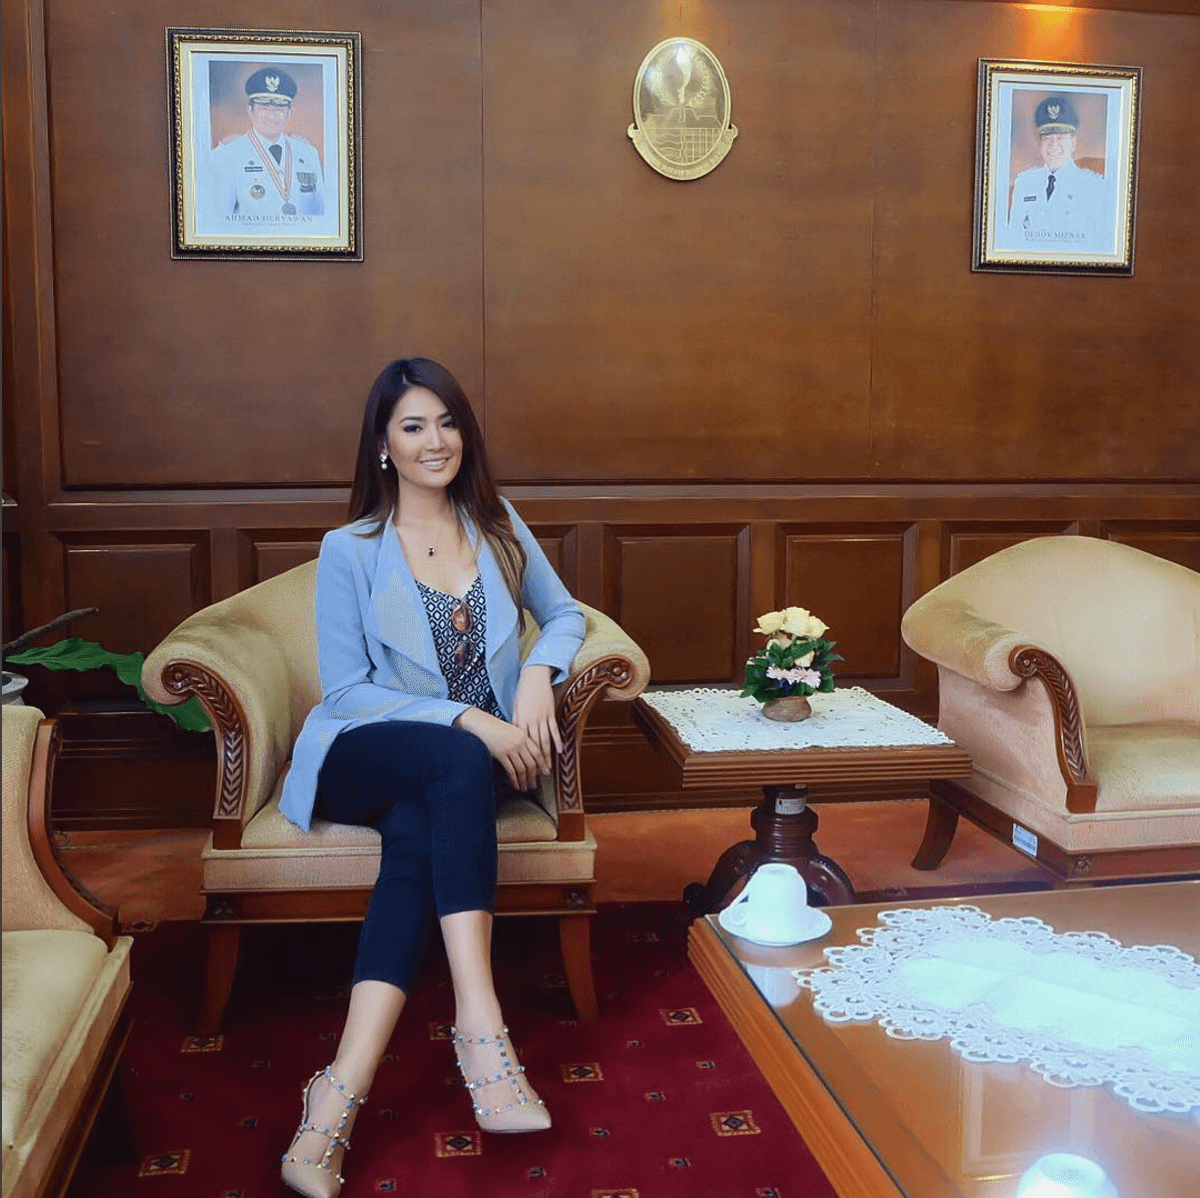 Putri Indonesia 2011, Maria Selena, jadi juru bicara PON 2016